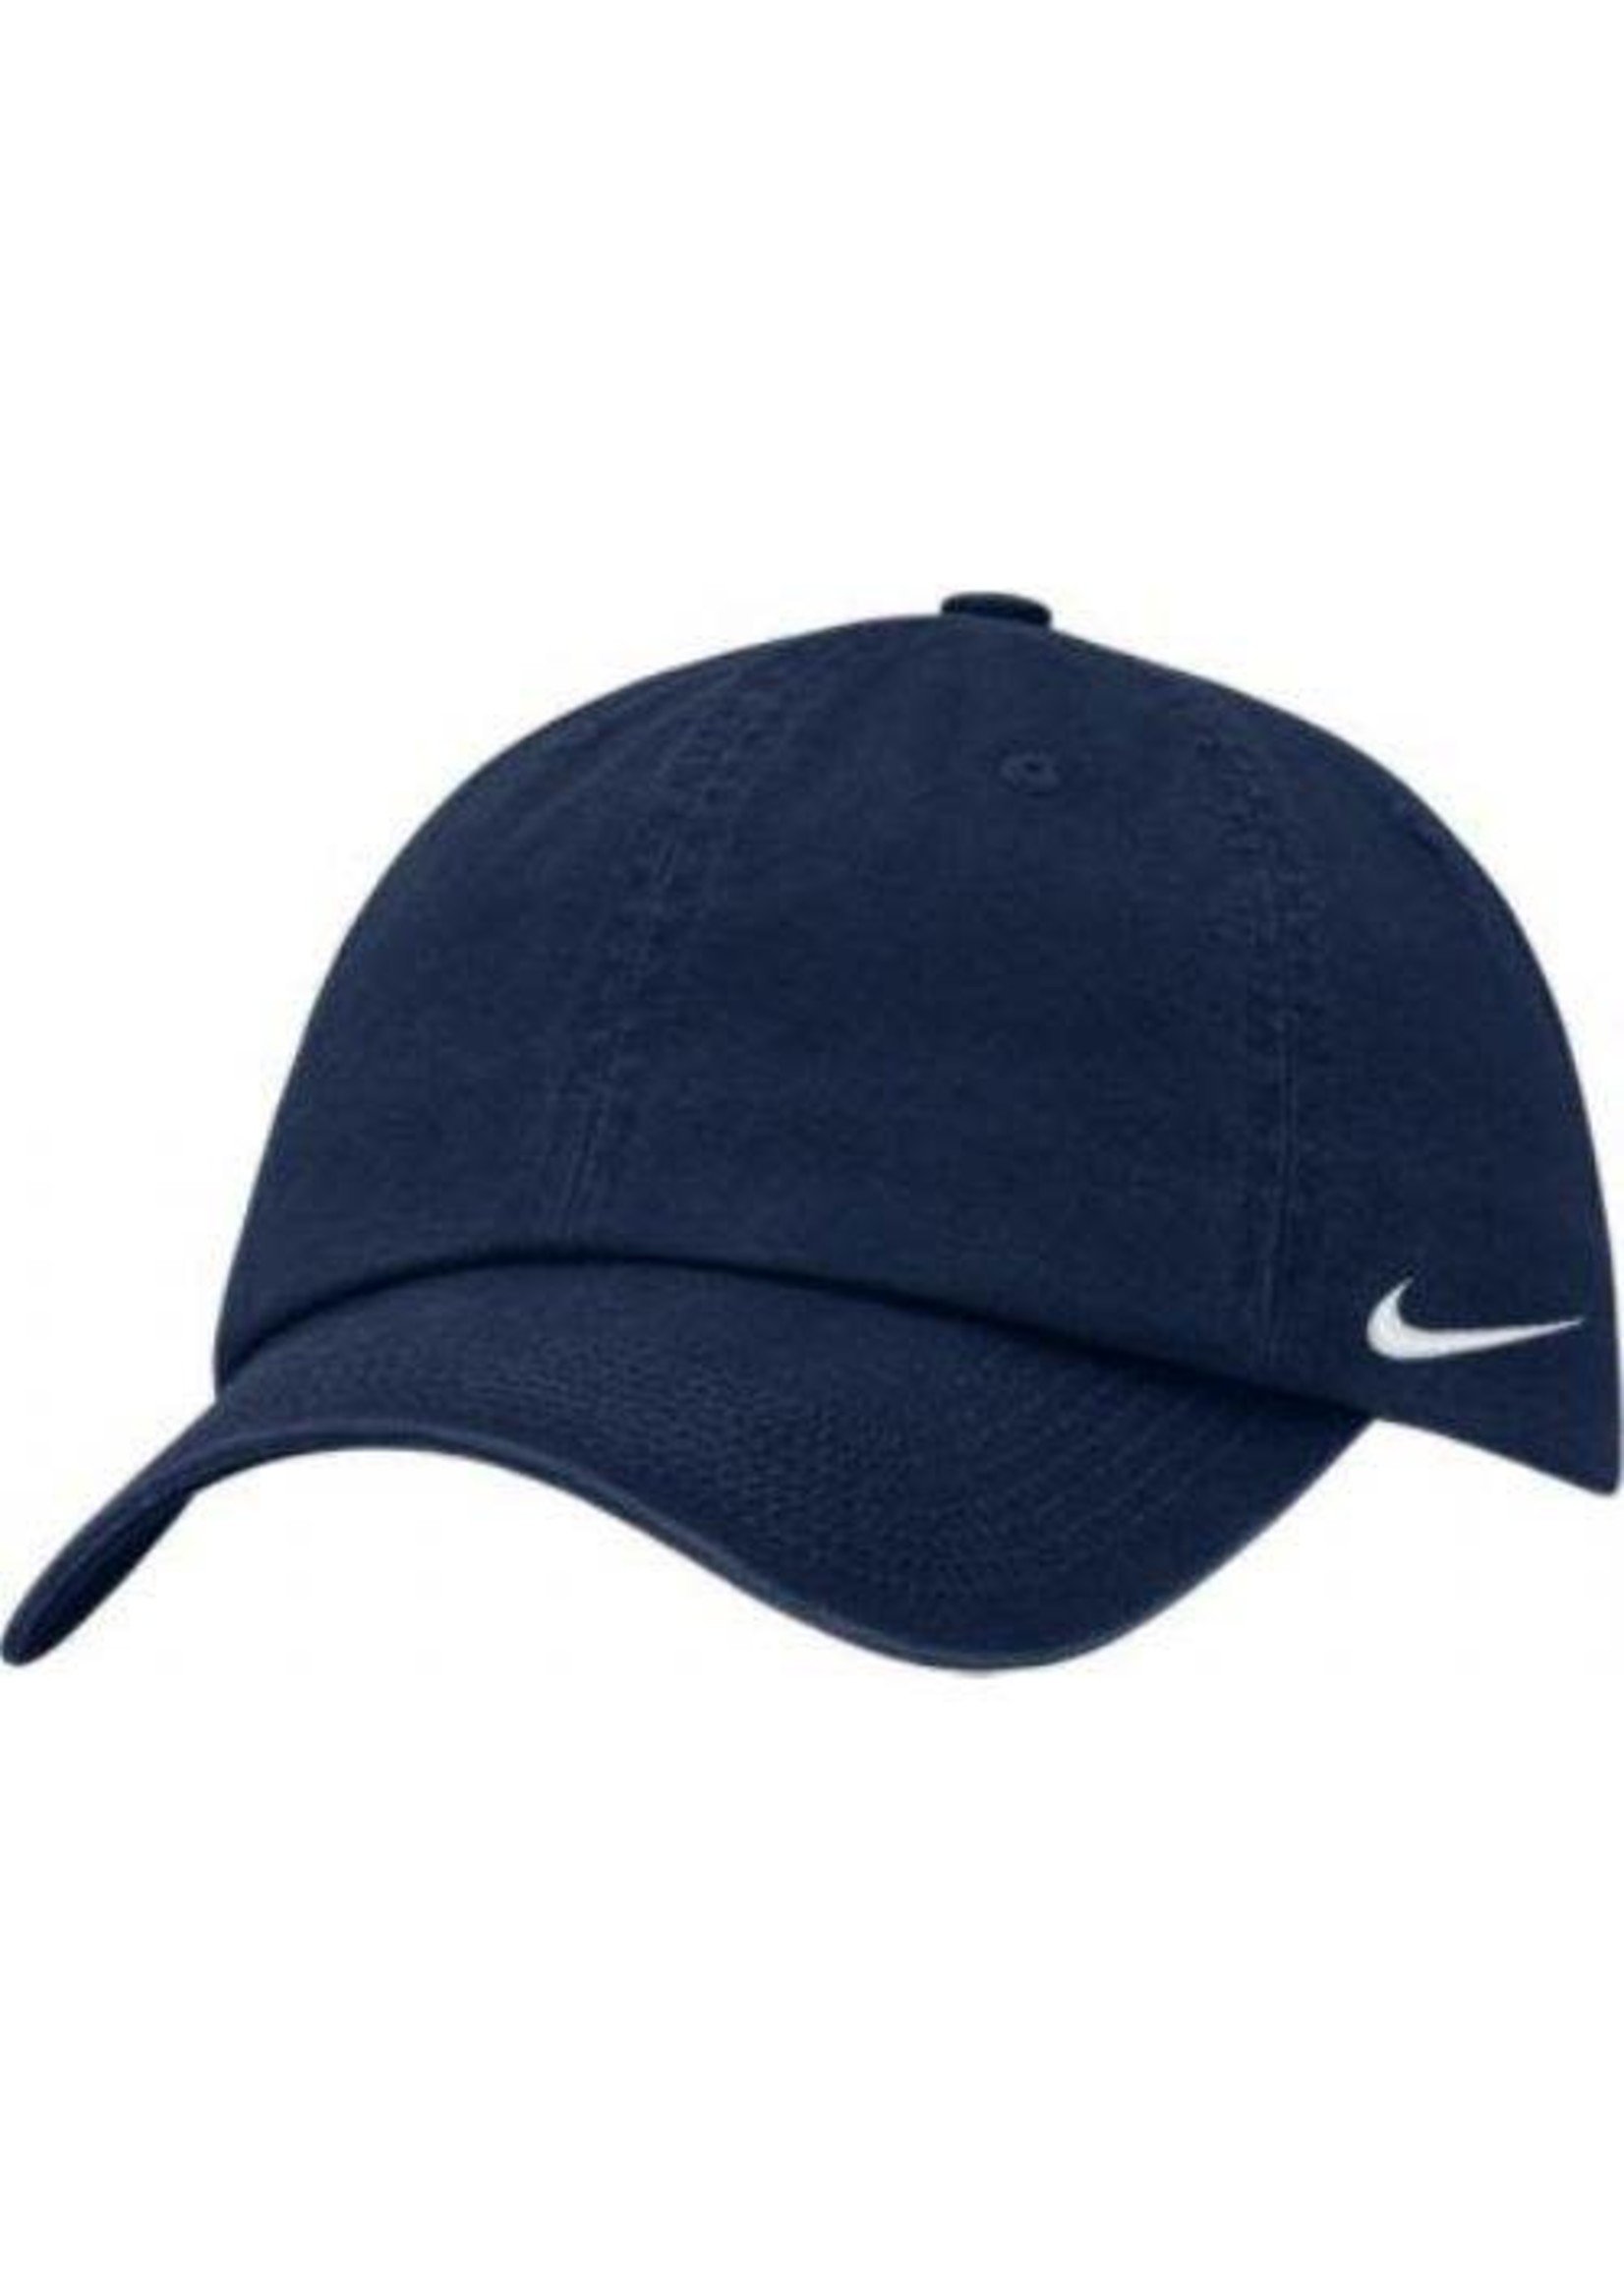 NON-UNIFORM Cap - JD Eagle Sport Name Hat, Navy